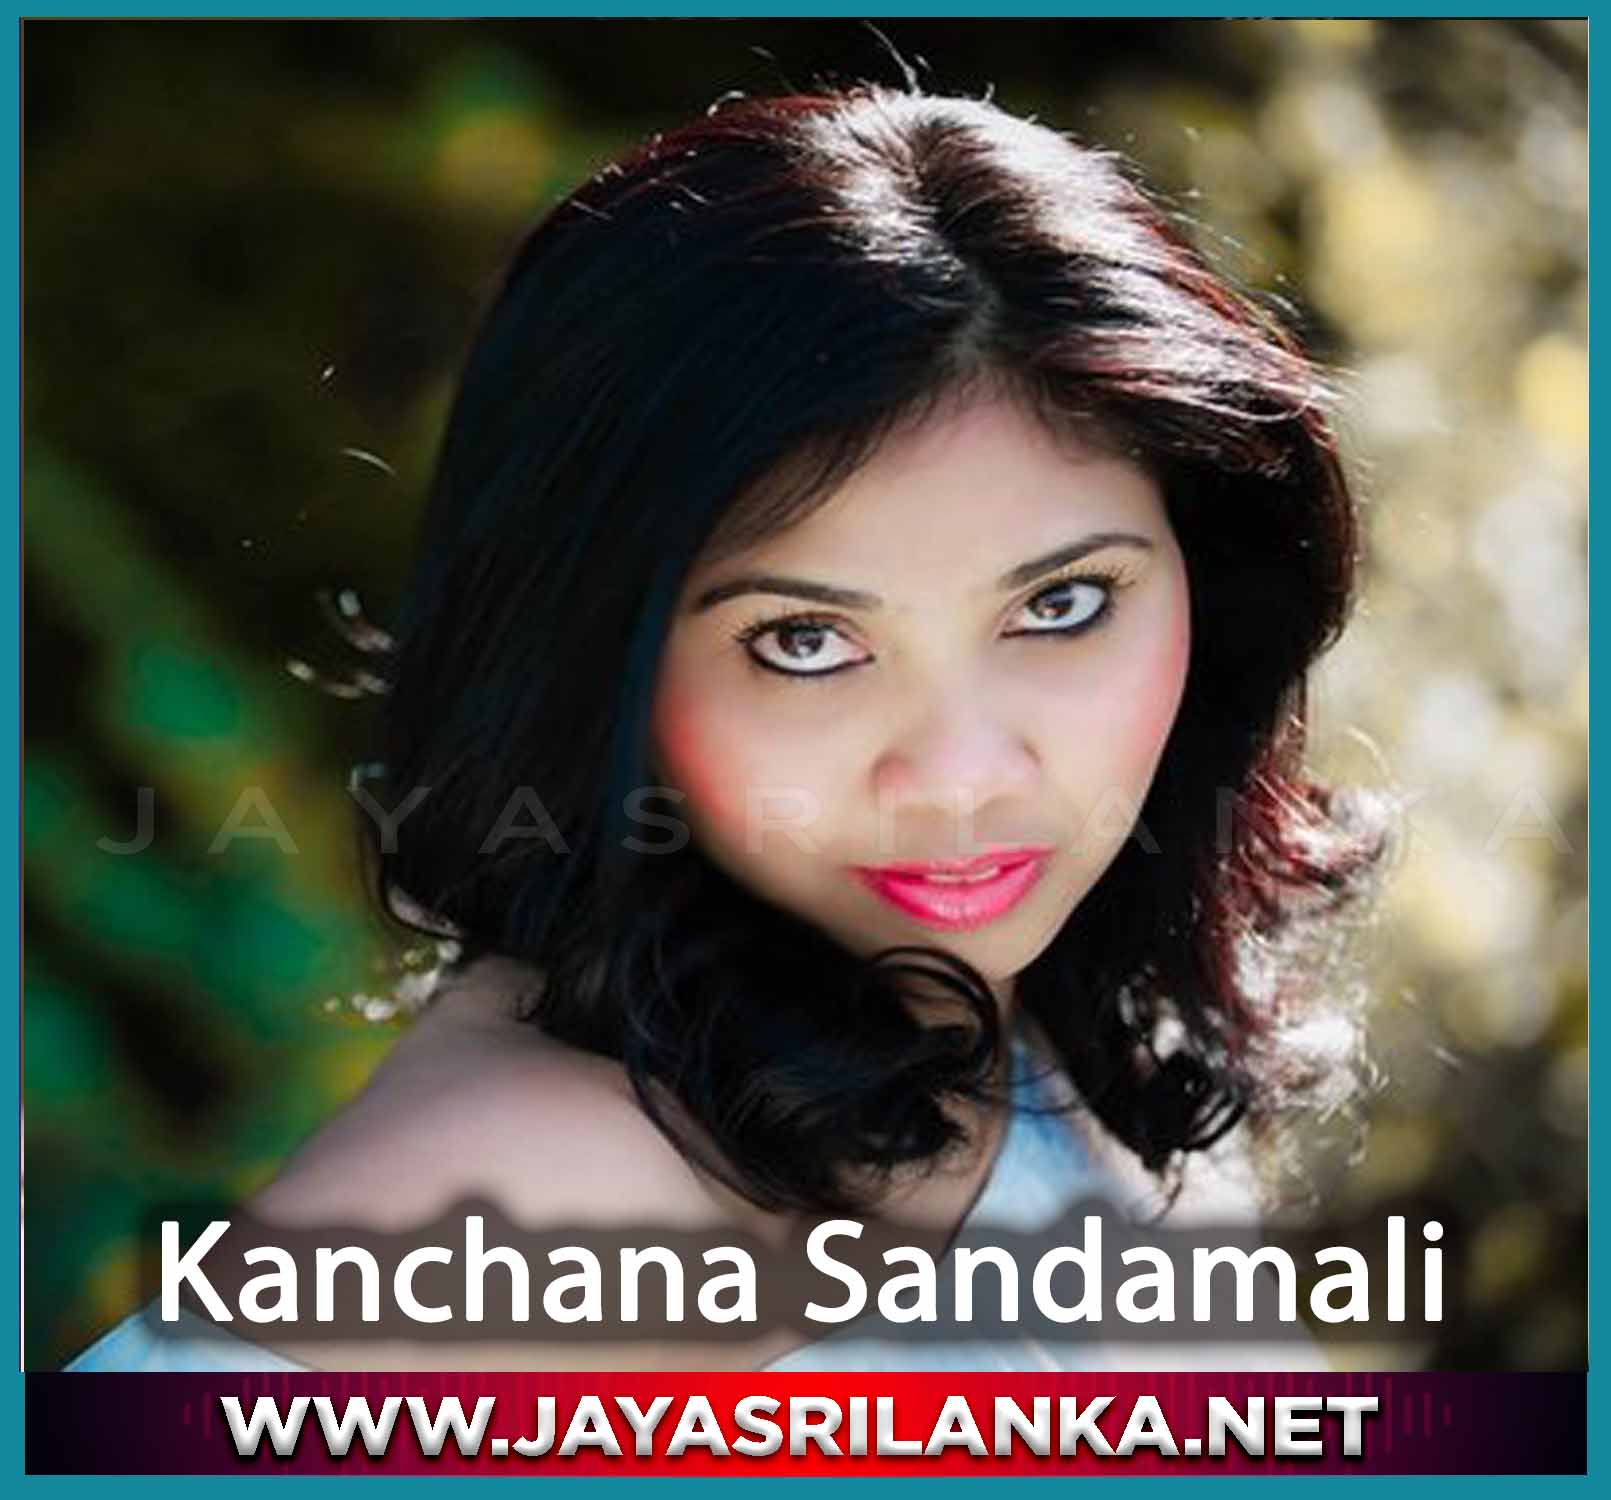 Nuba Yanta Yai - Kanchana Sandamali mp3 Image